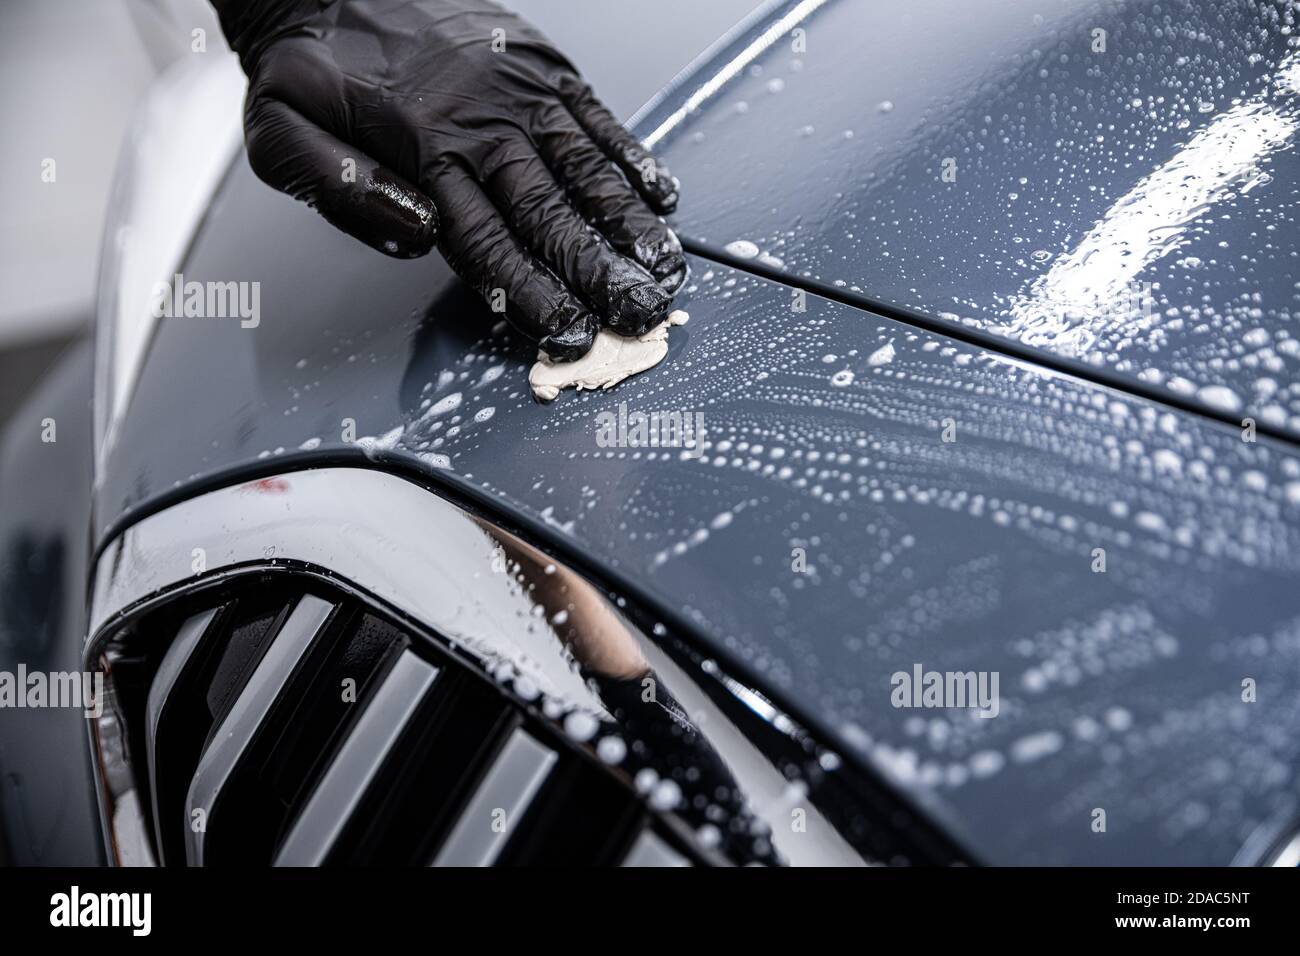 Mann Auto waschen Arbeiter Reinigung Auto Lack mit Auto Ton Stockfotografie  - Alamy